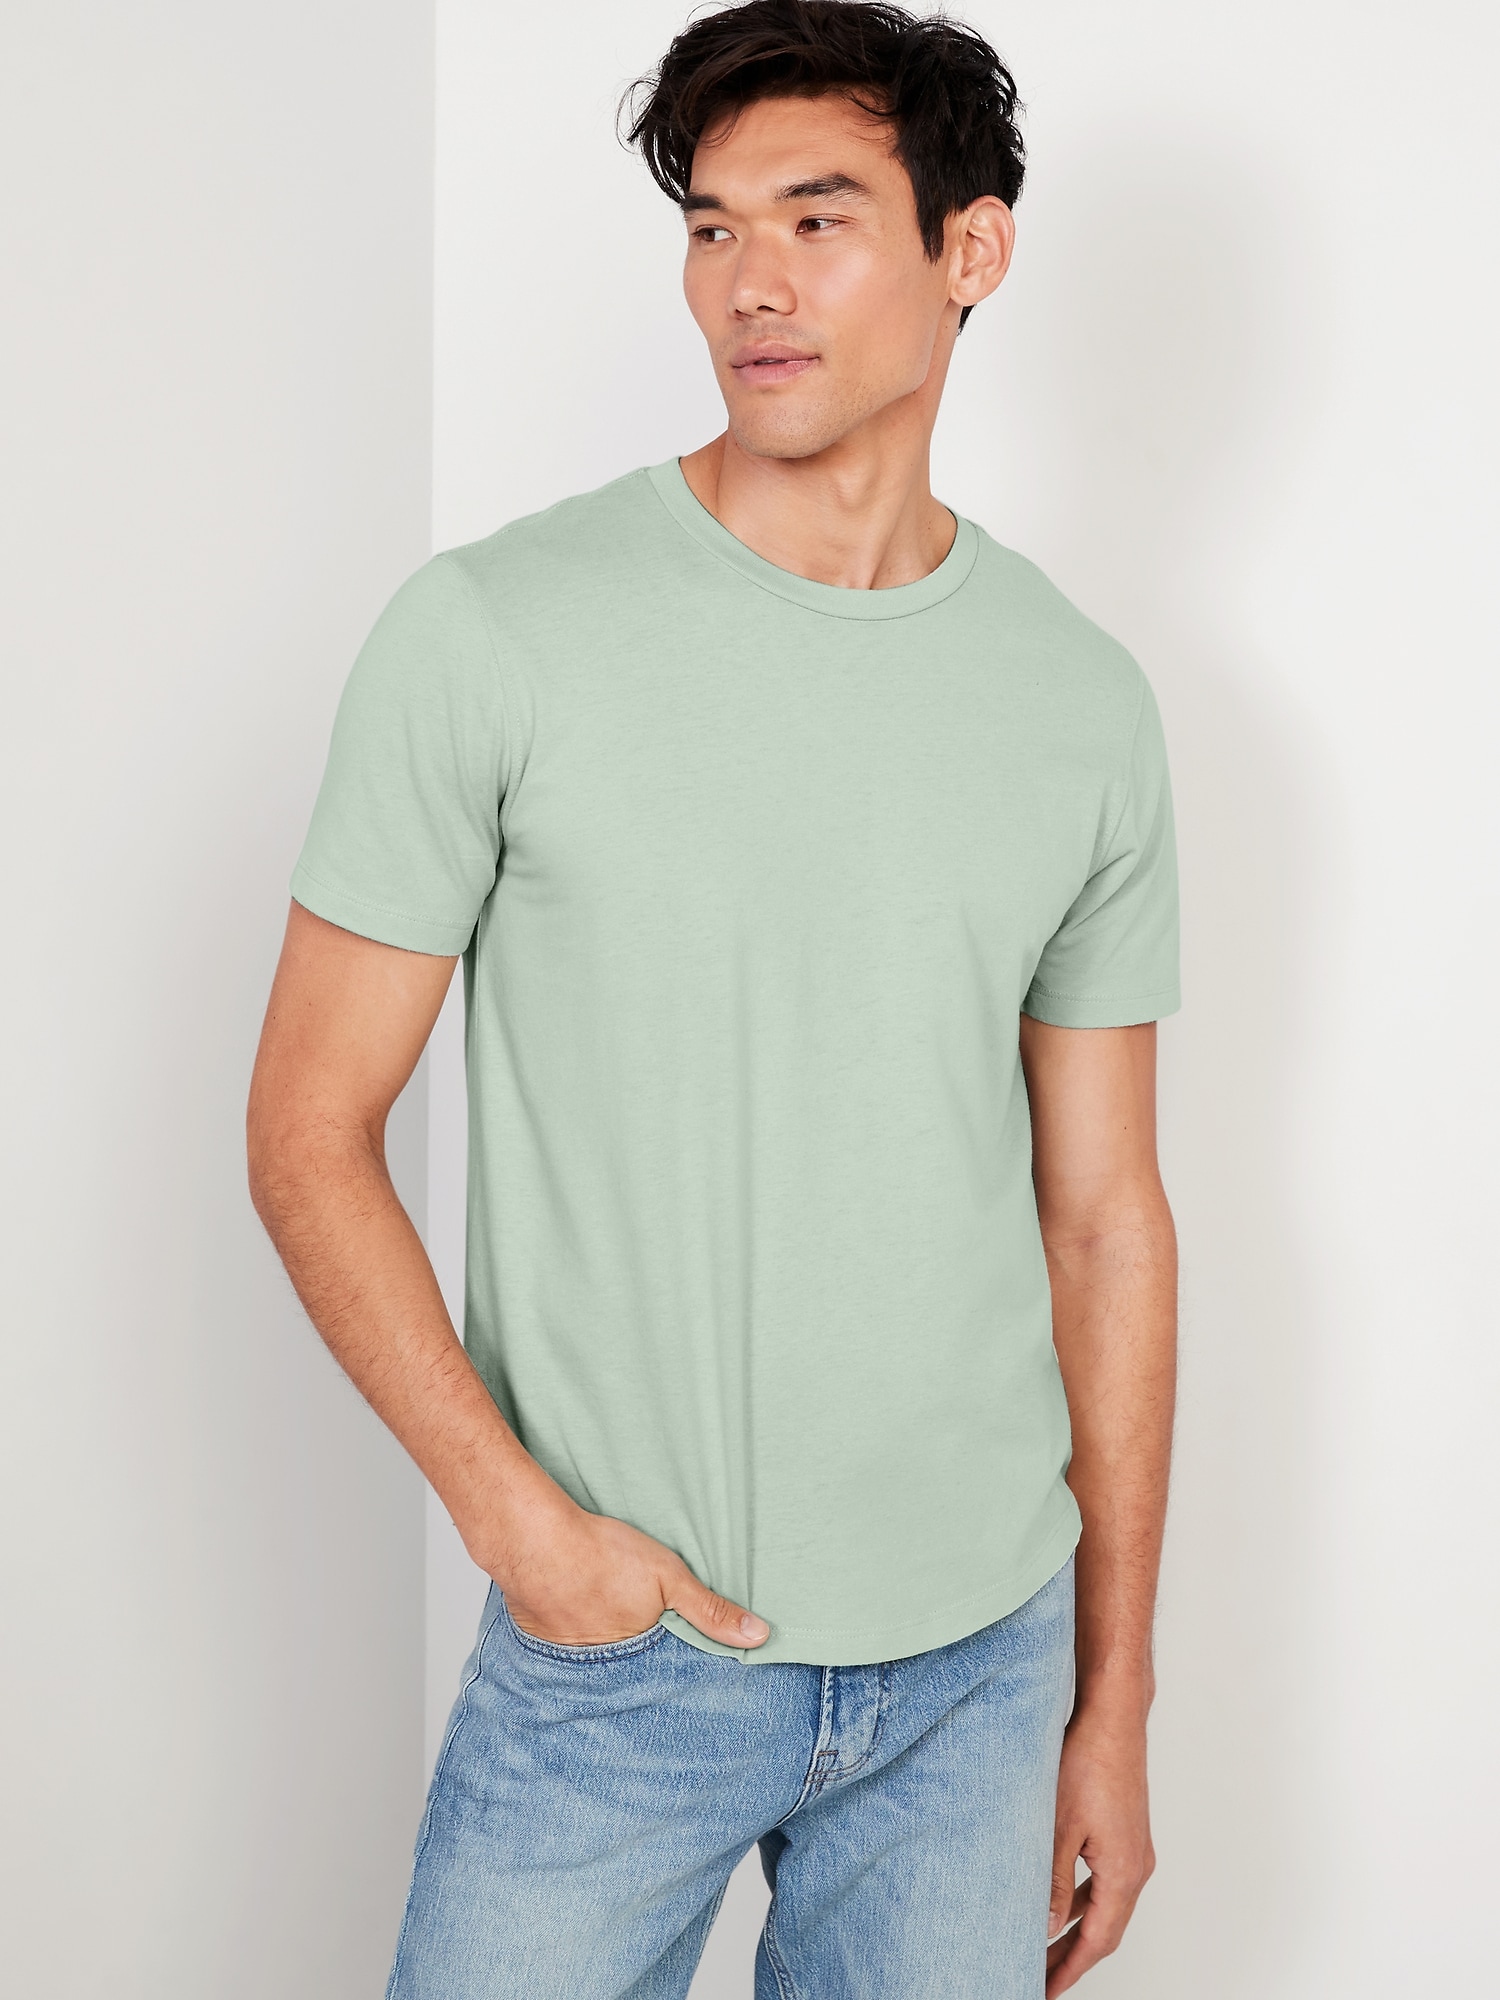 Old Navy Soft-Washed Curved-Hem T-Shirt for Men green. 1